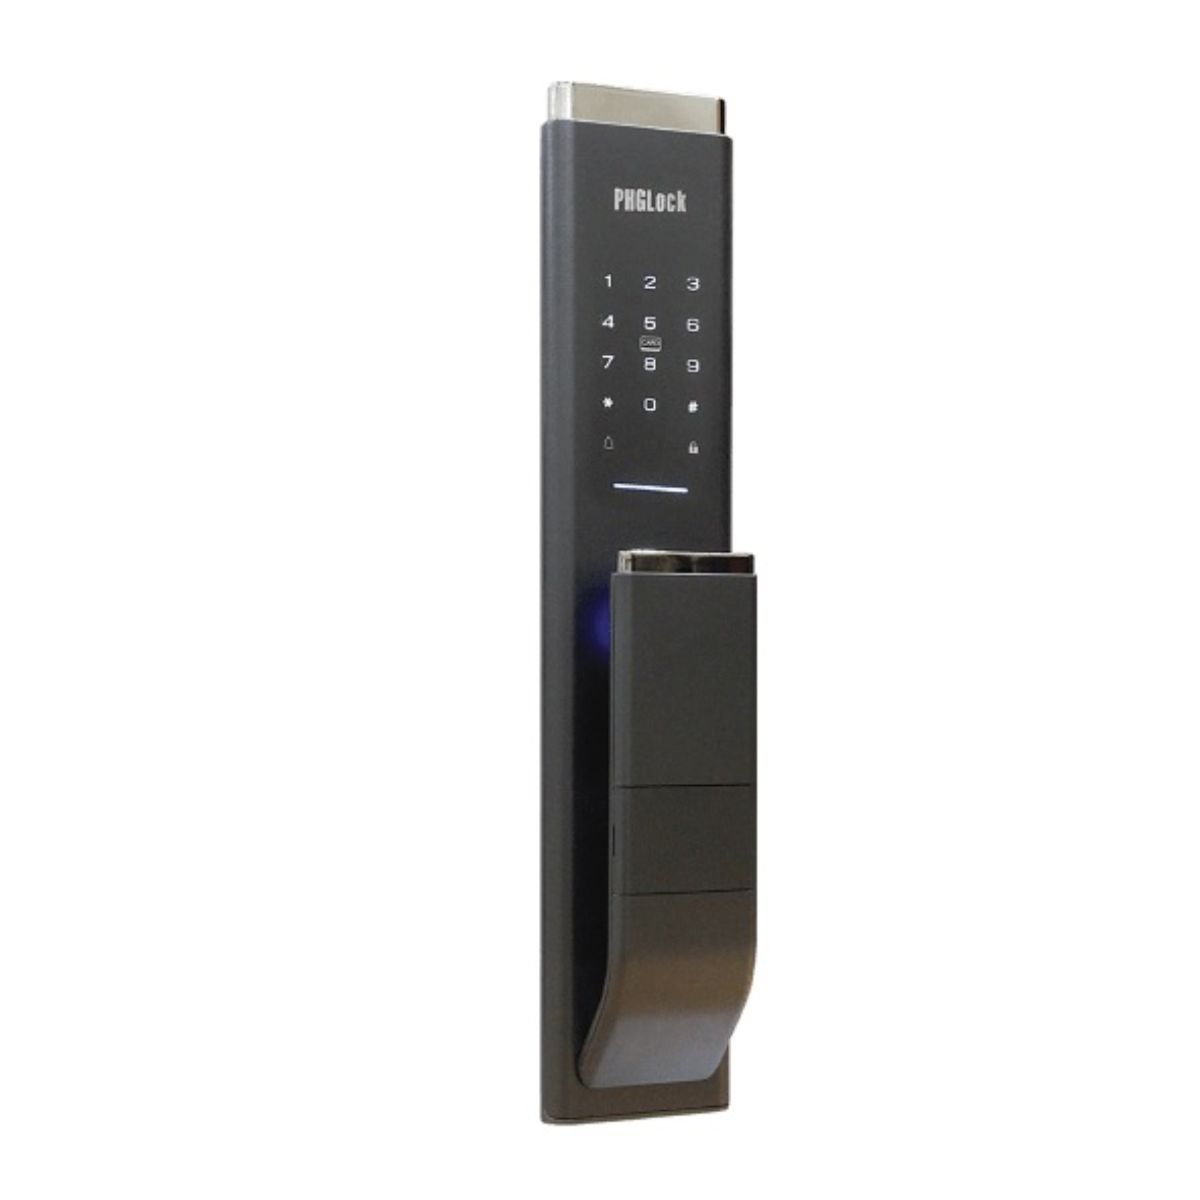 Khóa cửa Smart Lock cho căn hộ, homestay PHGLock FP6701 mở khóa bằng mã số, vân tay, thẻ từ Mifare và chìa khóa cơ